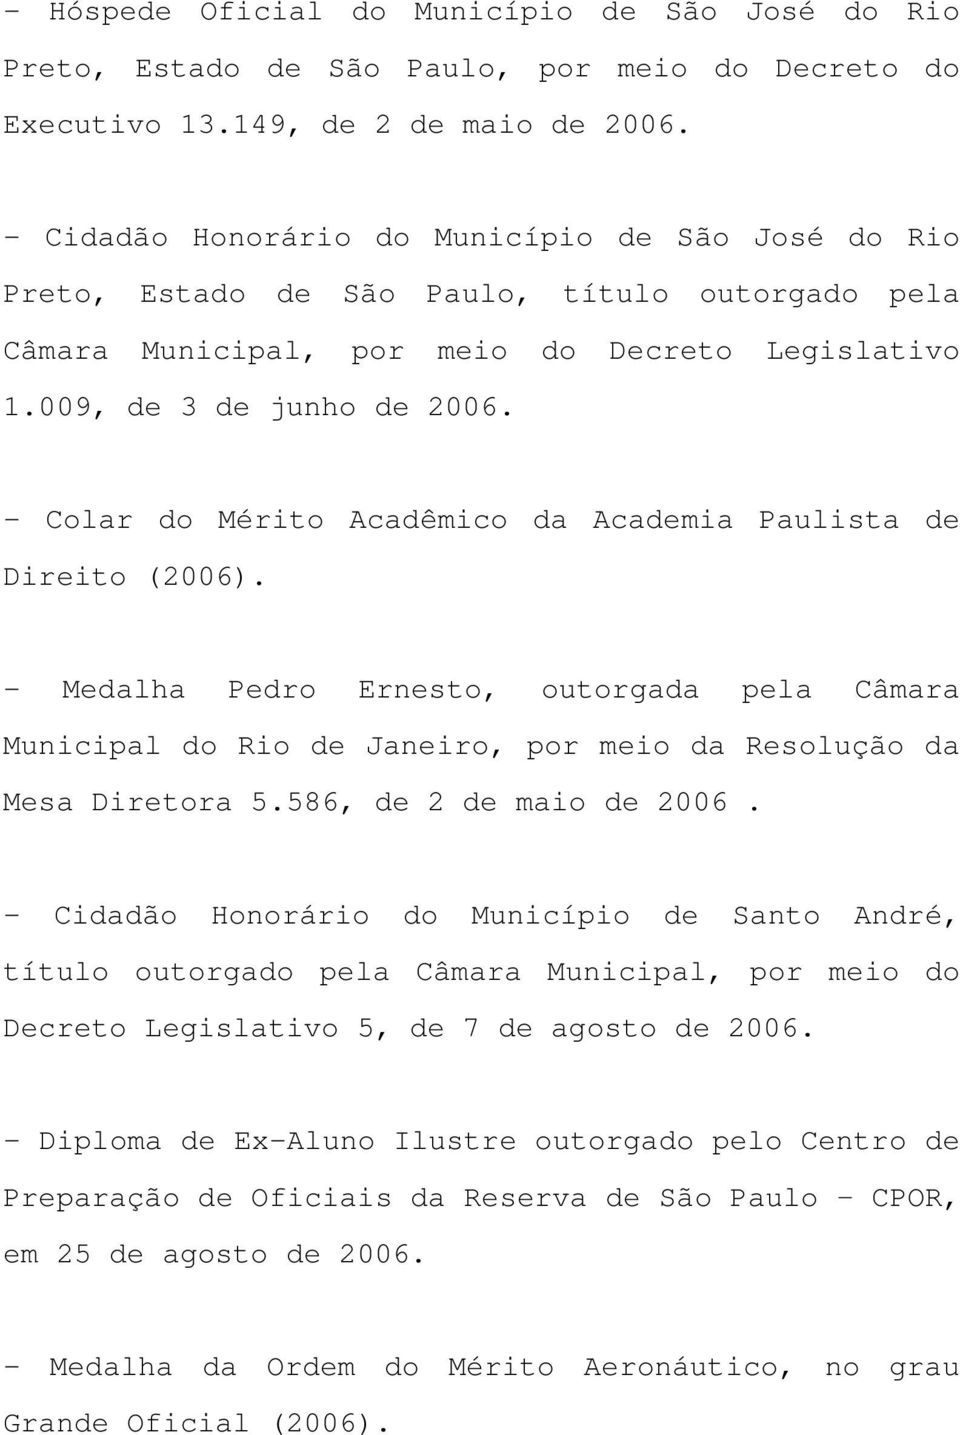 - Colar do Mérito Acadêmico da Academia Paulista de Direito (2006). - Medalha Pedro Ernesto, outorgada pela Câmara Municipal do Rio de Janeiro, por meio da Resolução da Mesa Diretora 5.